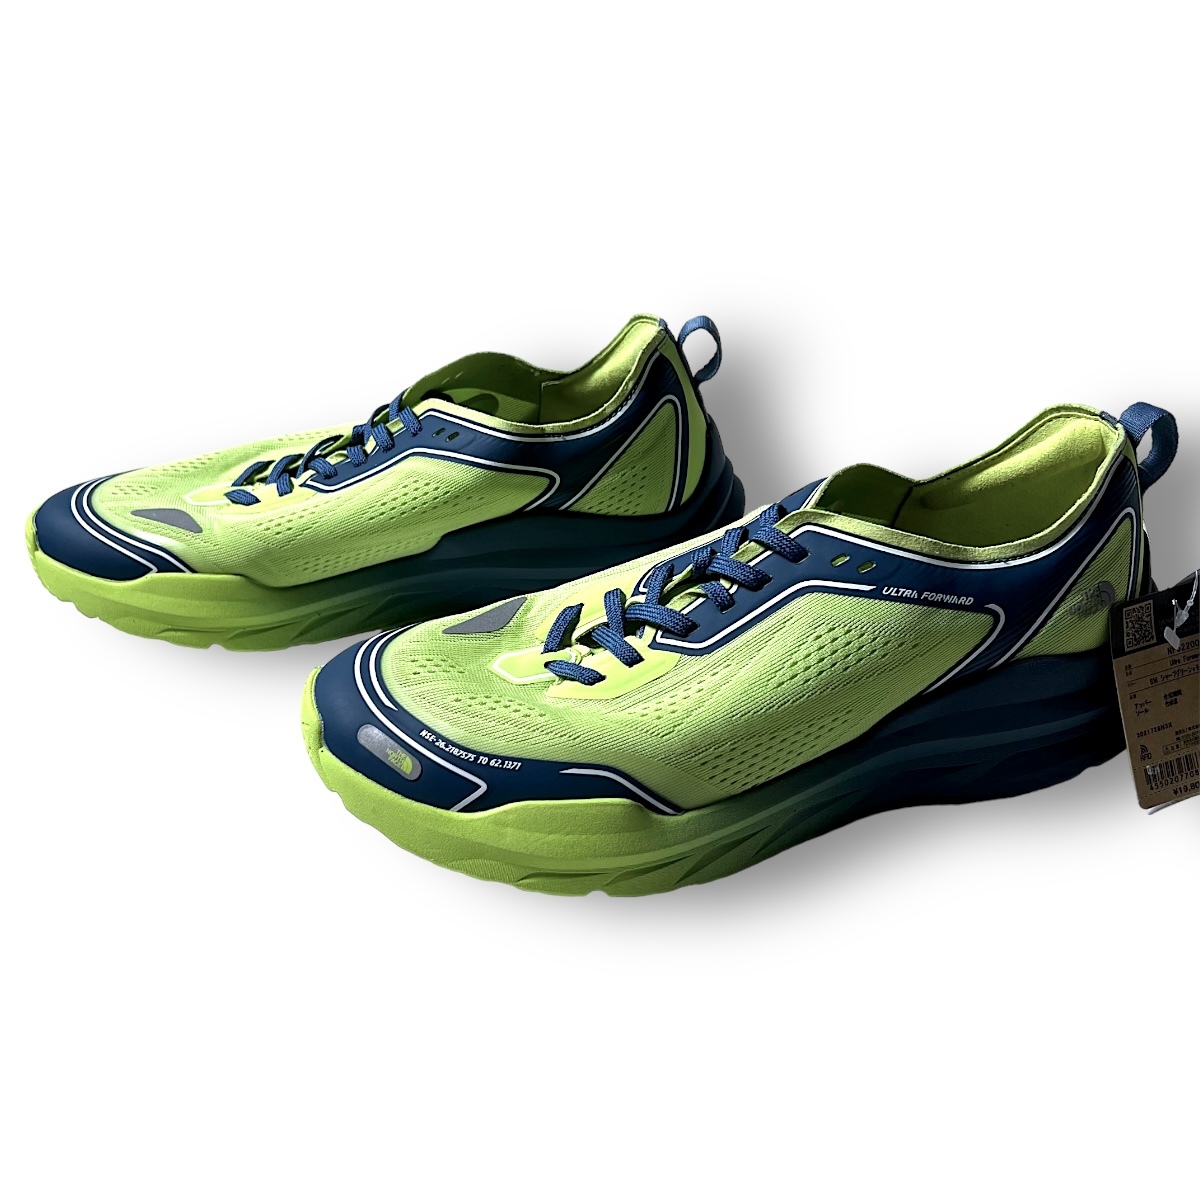  новый товар THE NORTH FACE North Face обычная цена 1.9 десять тысяч легкий водоотталкивающий спортивные туфли бег обувь уличный спорт 27.5cm NF52200 *B2880